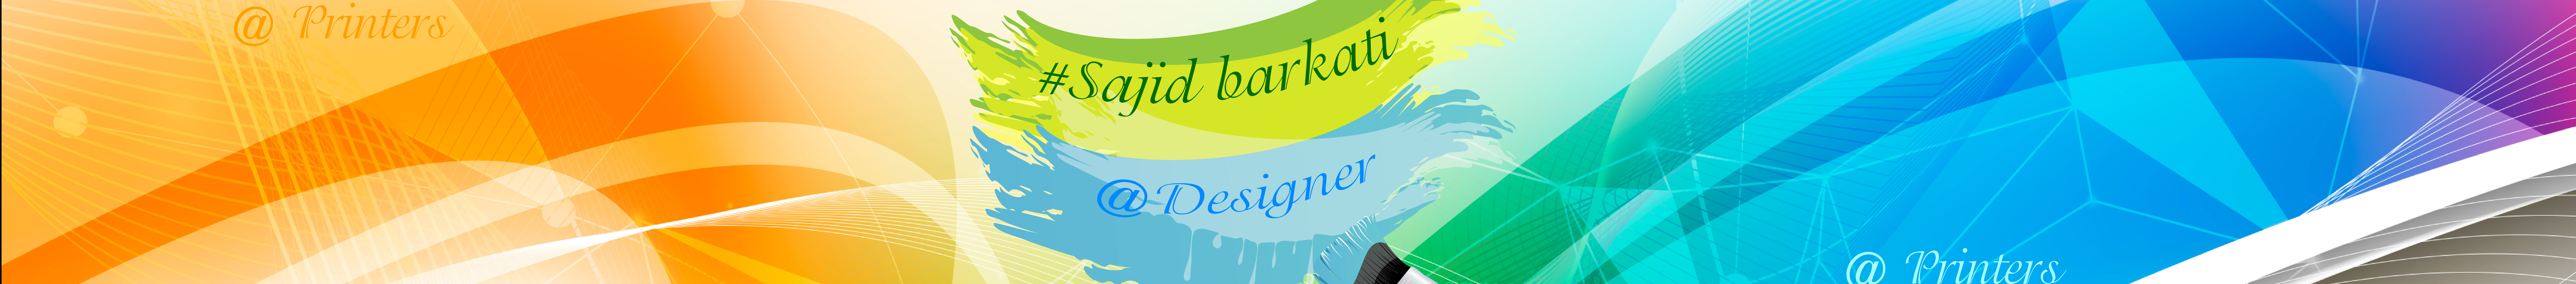 sajid Barkati profil başlığı